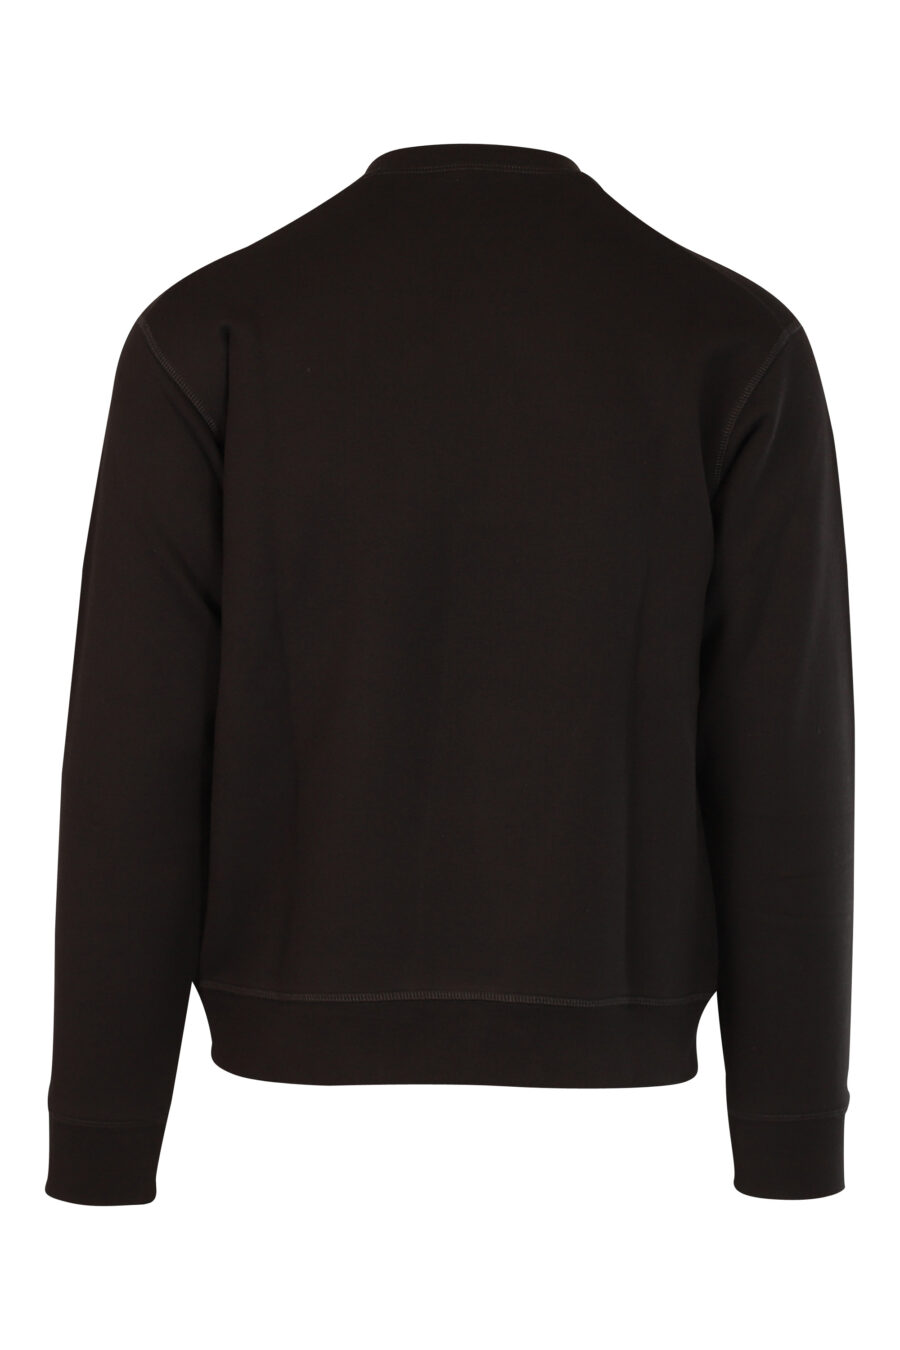 Black sweatshirt with turquoise and fuchsia "icon pixeled" maxilogo - 8052134982297 3